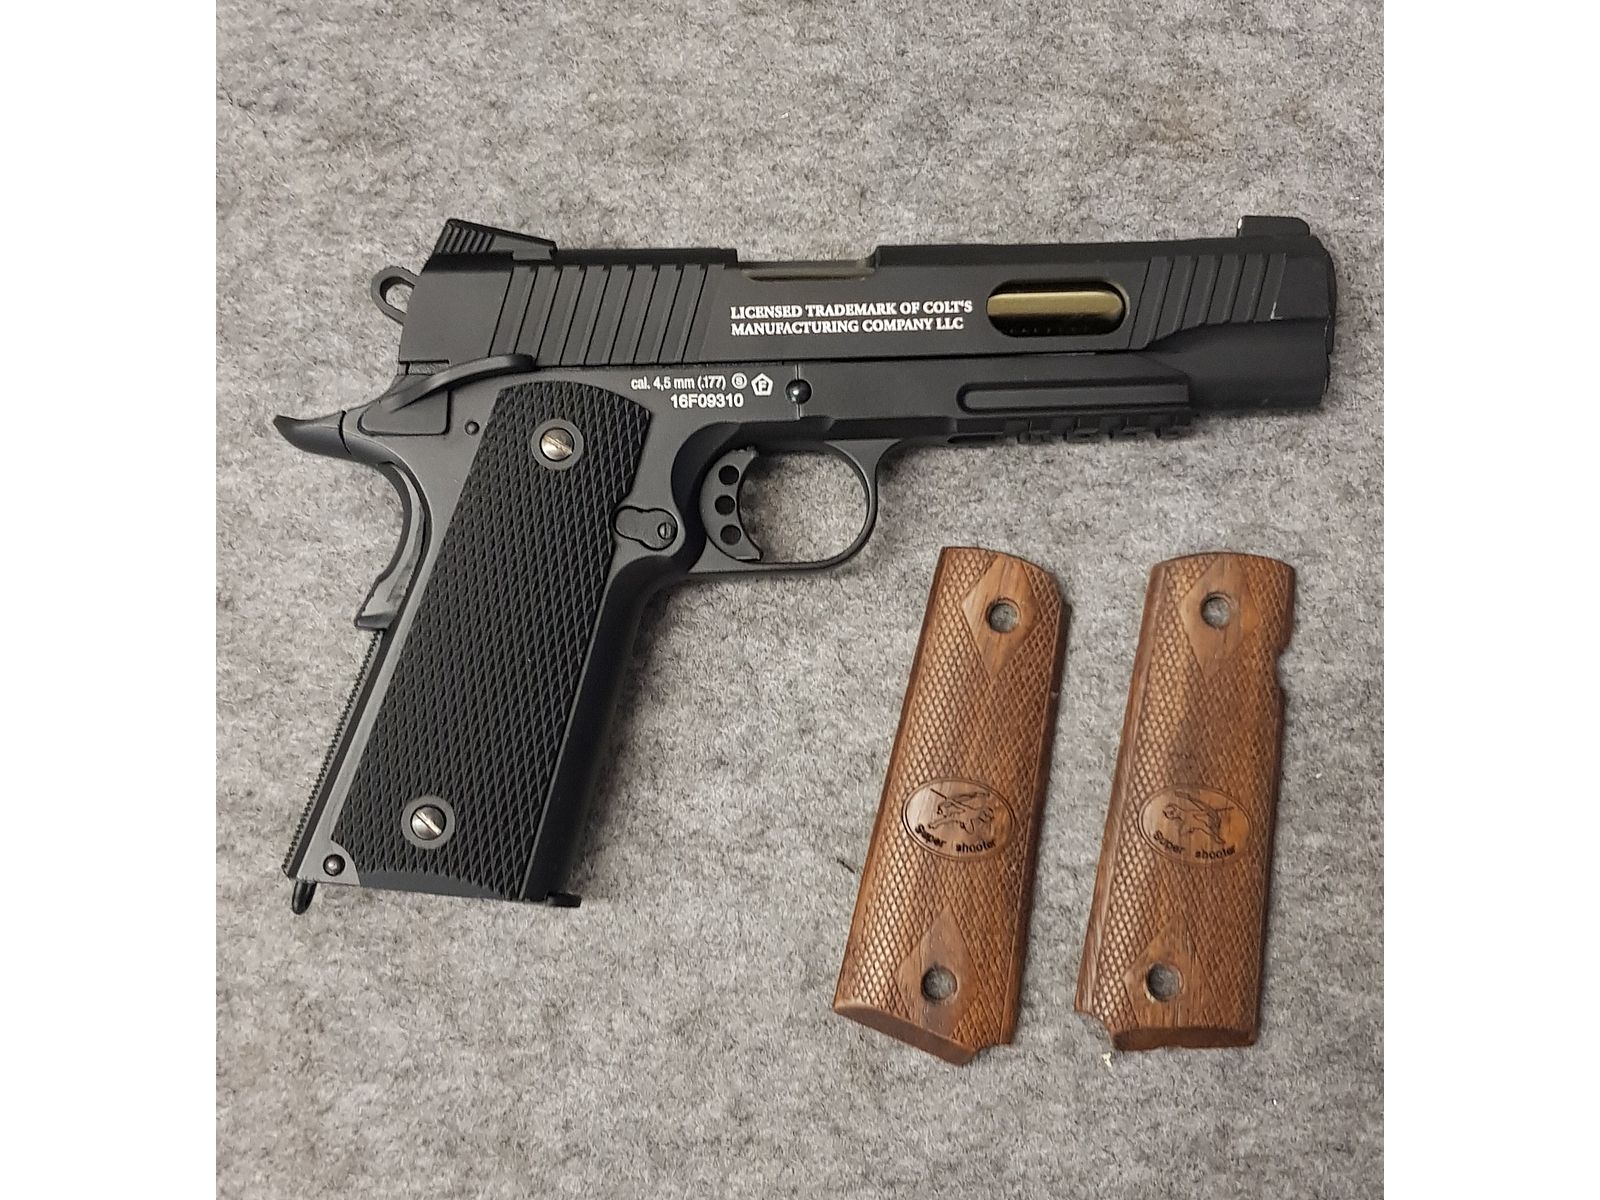 Colt 1911 Custom Umarex Co2 Pistole 4,5mm BB Blowback Ganzmetall Ausführung 930gr. nicht mehr im Handel erhältlich  